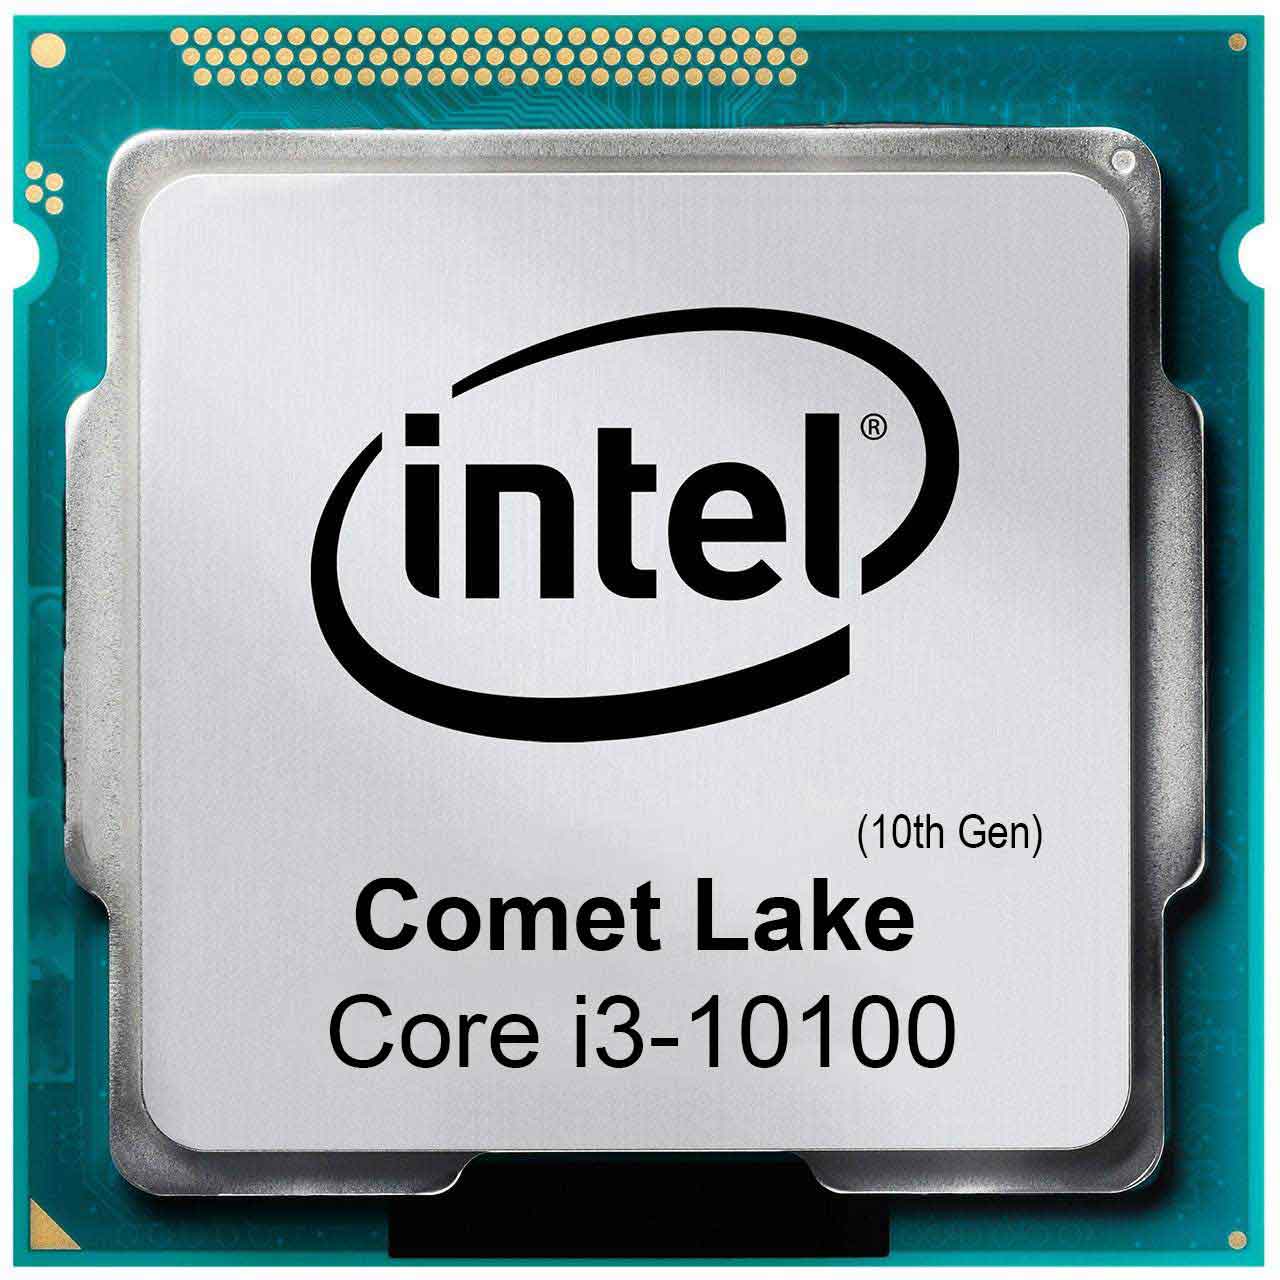 پردازنده اینتل Intel Core i3-10100 tray سری Comet Lake